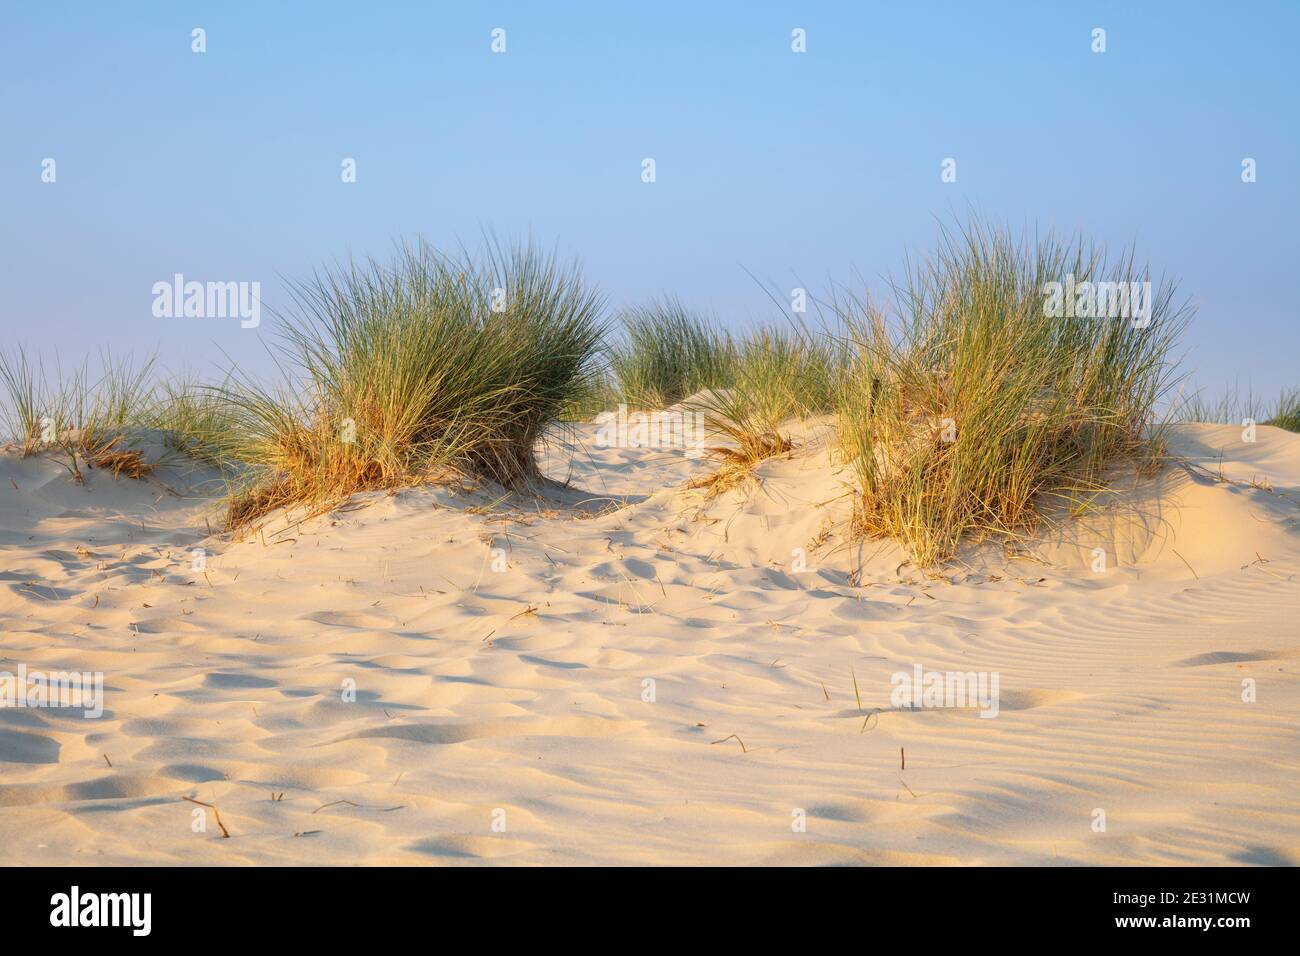 Dune landscape at the Nationalpark Wadden sea, Borkum, East Frisian Island, East frisia, Lower Saxony, Germany, Europe Stock Photo